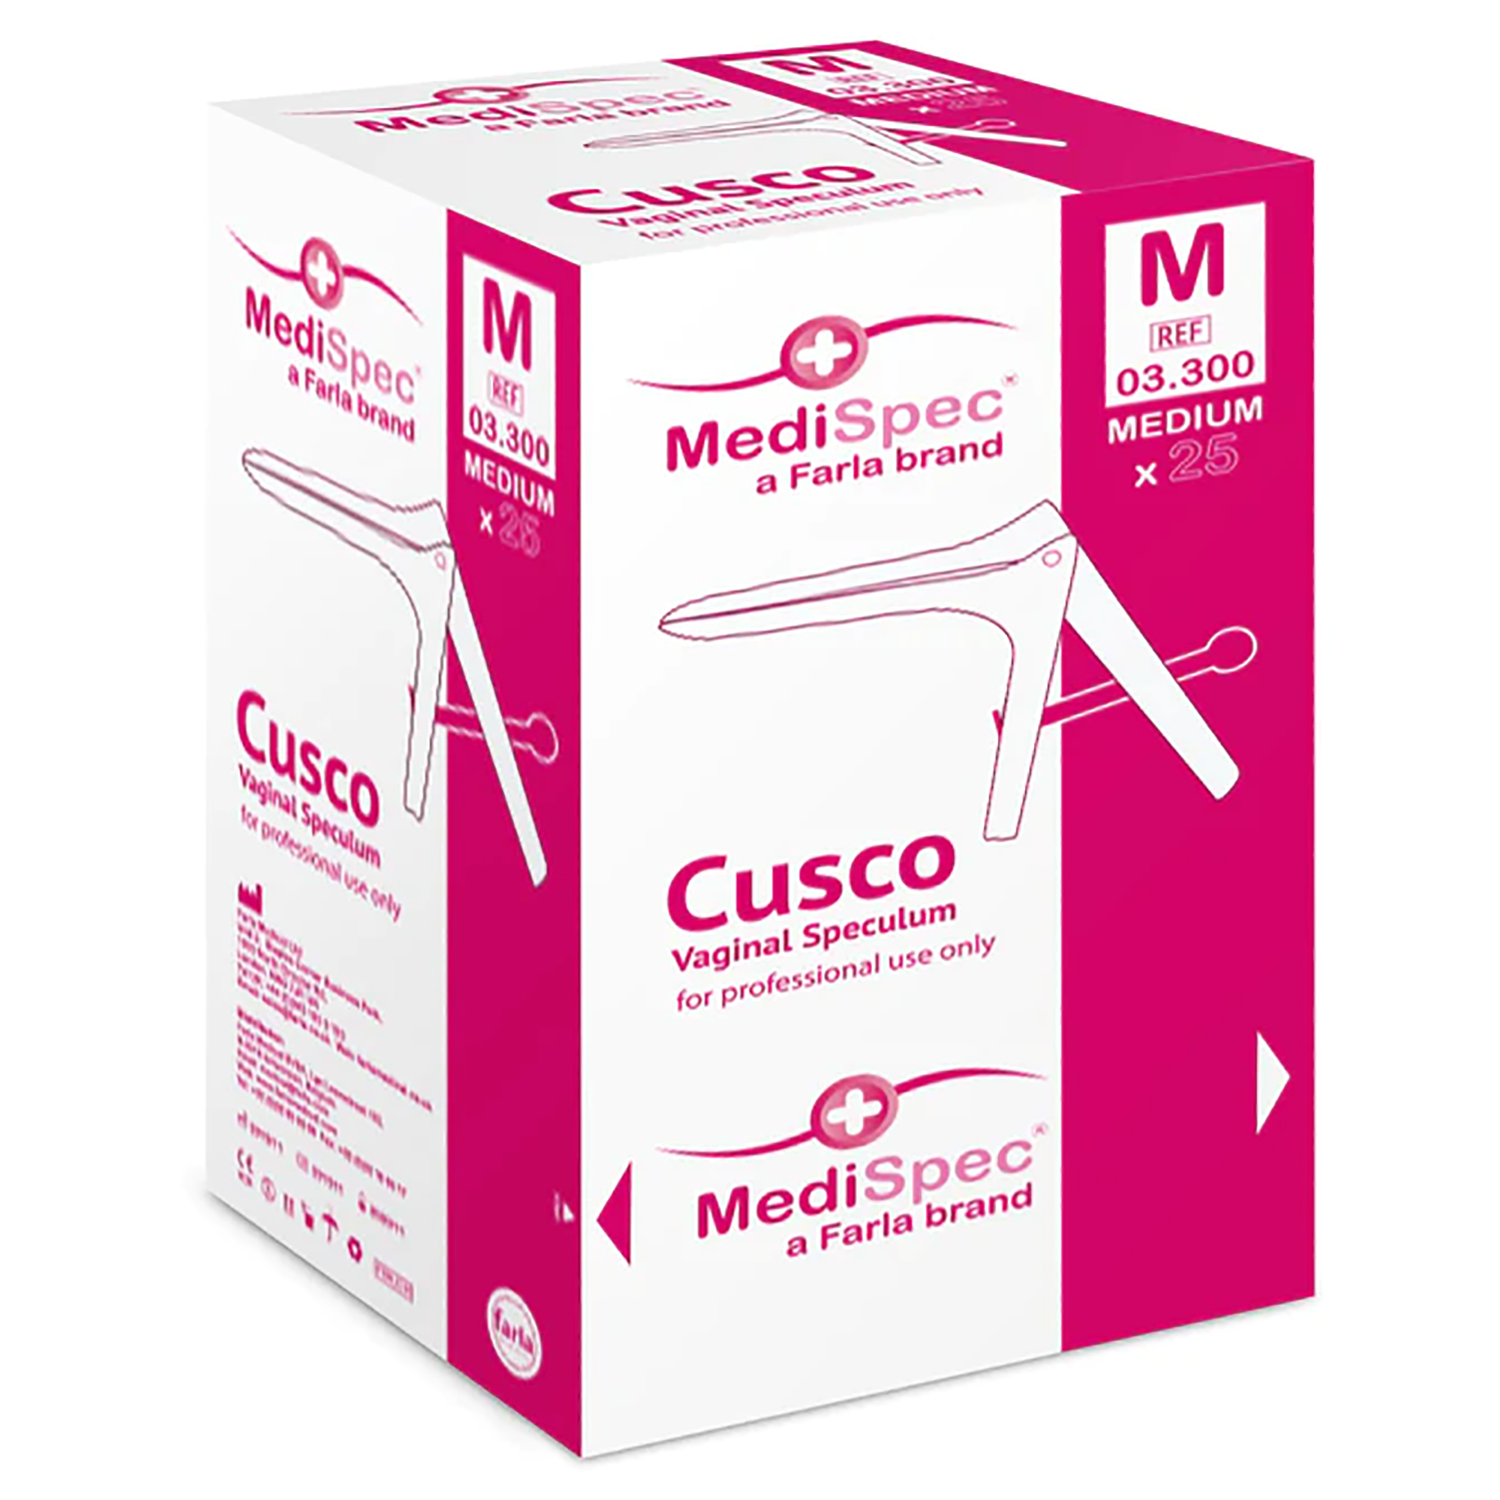 MediSpec Cusco Vaginal Speculum (Locking Mechanism) | Pack of 100 (5)